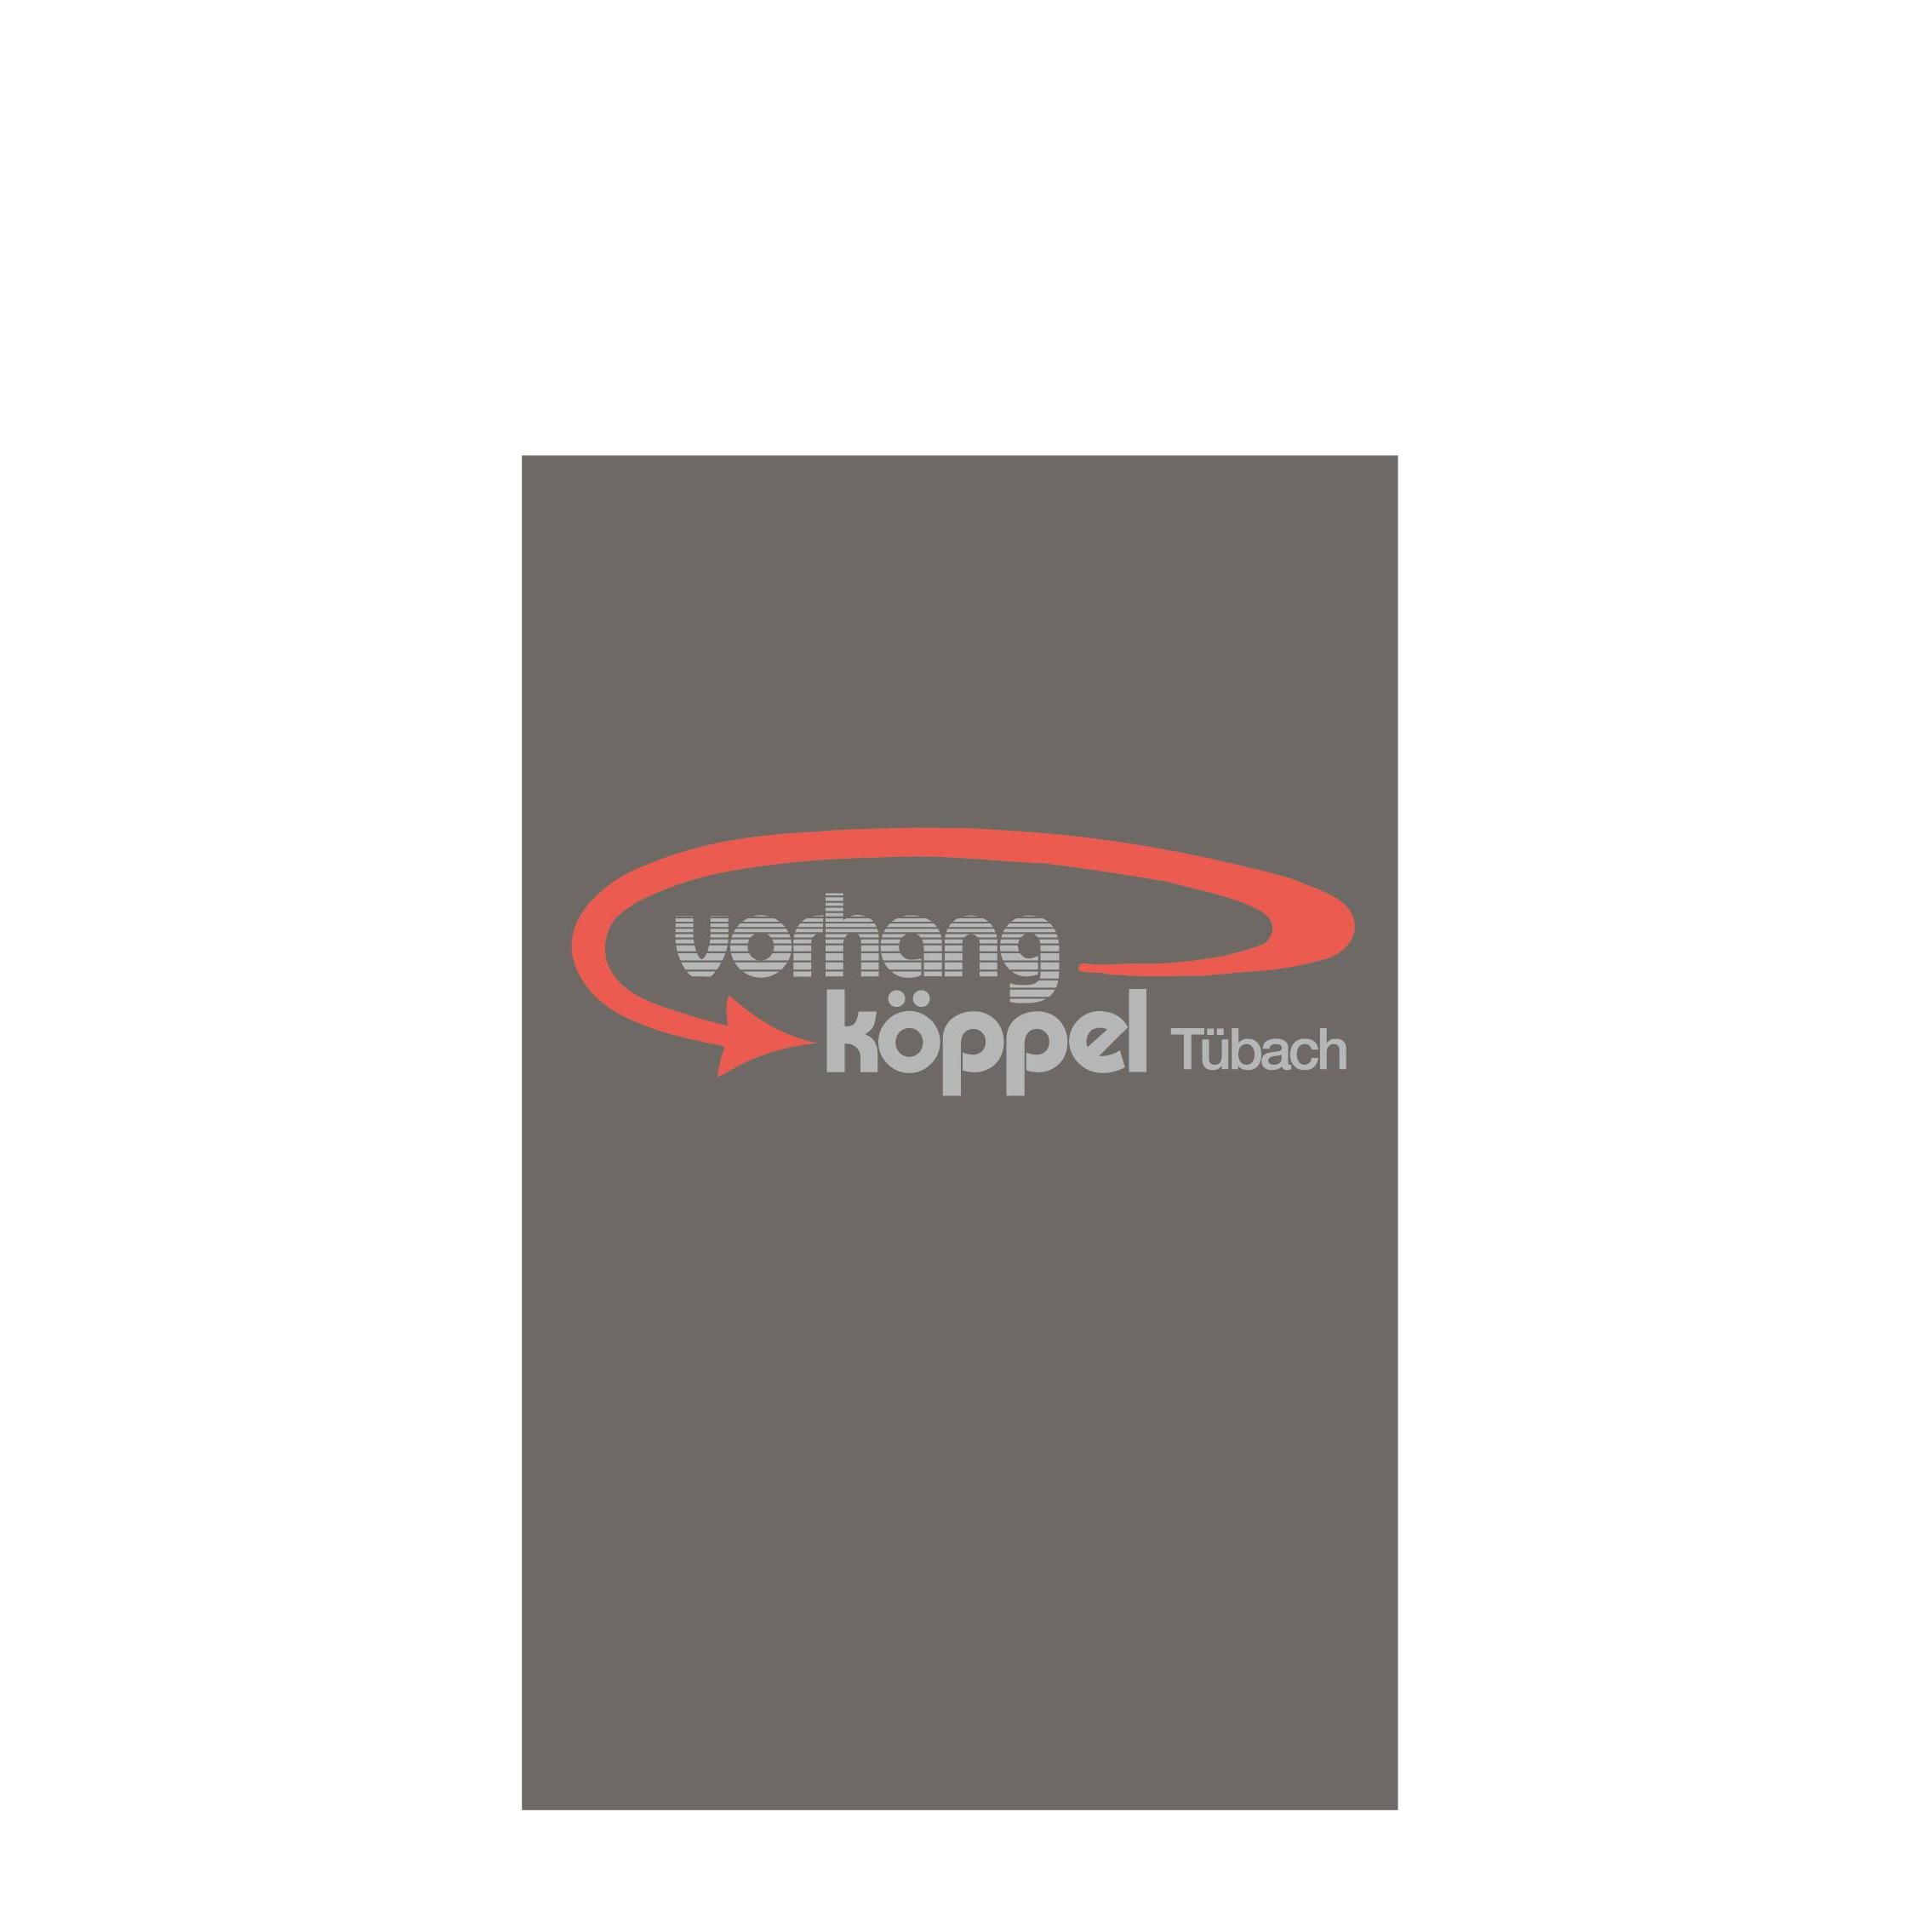 Vorhang Köppel AG Logo